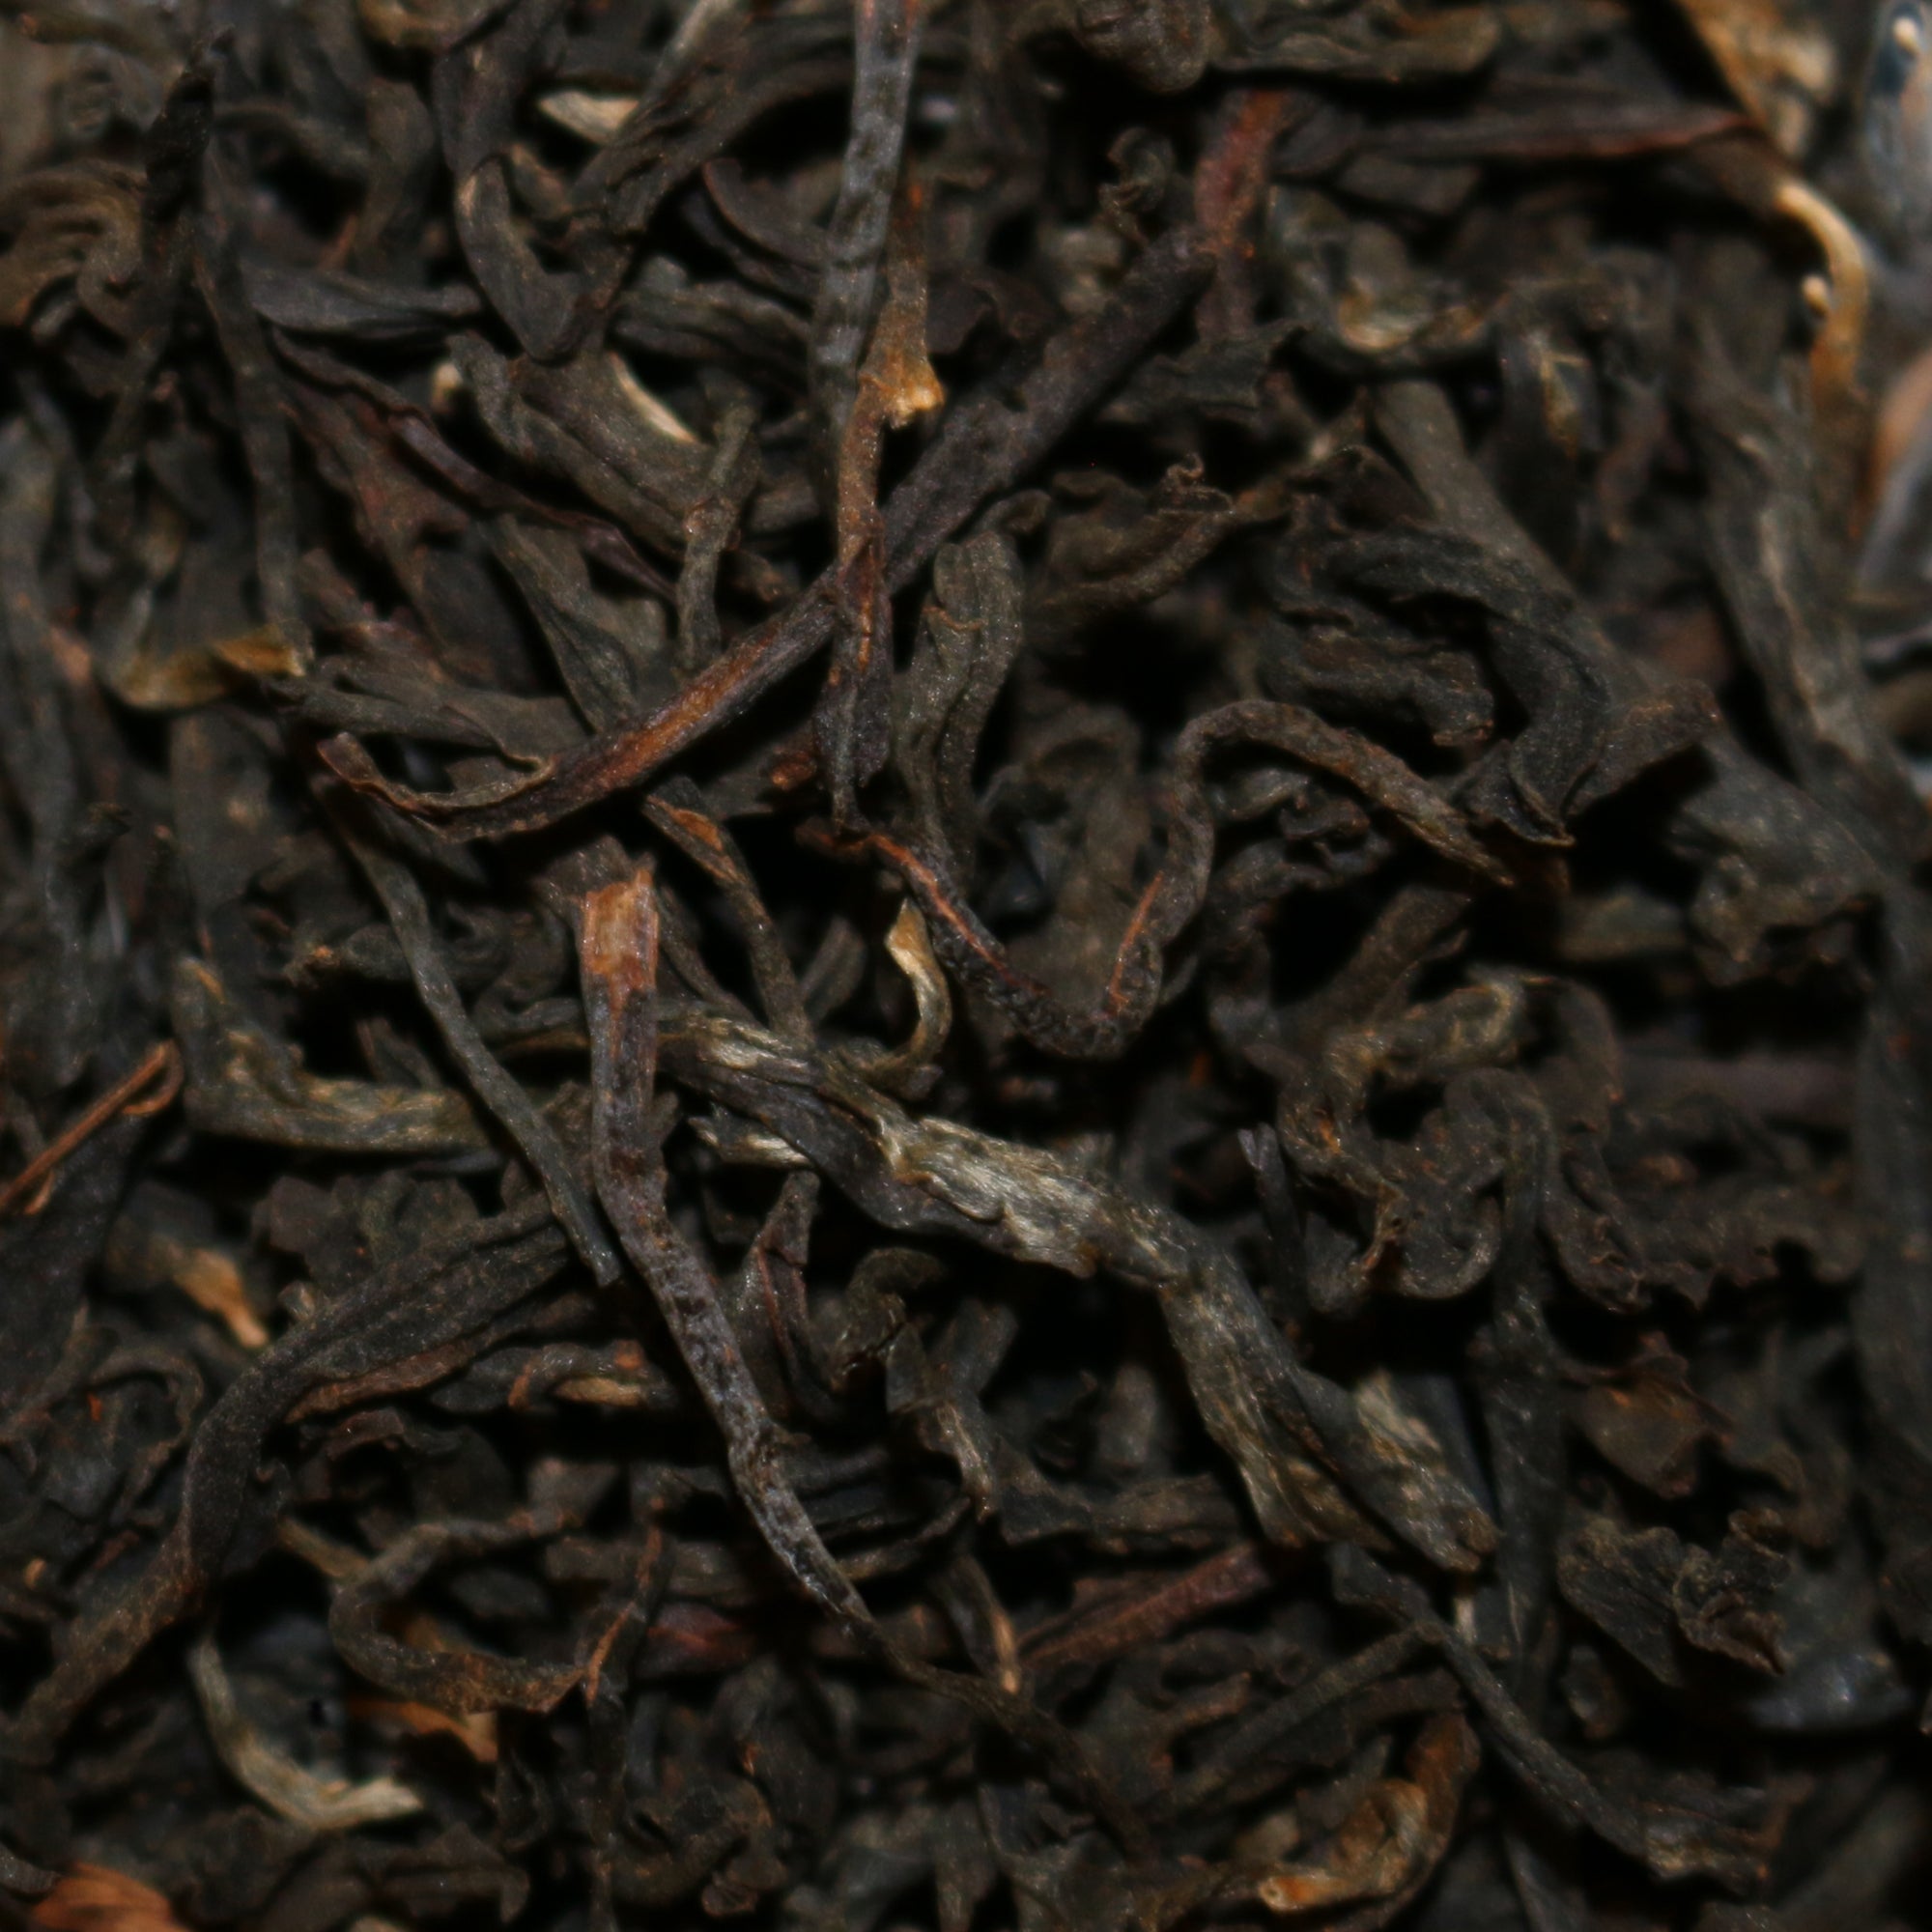 Wild Grown Ancient Tree Vietnam Black Tea